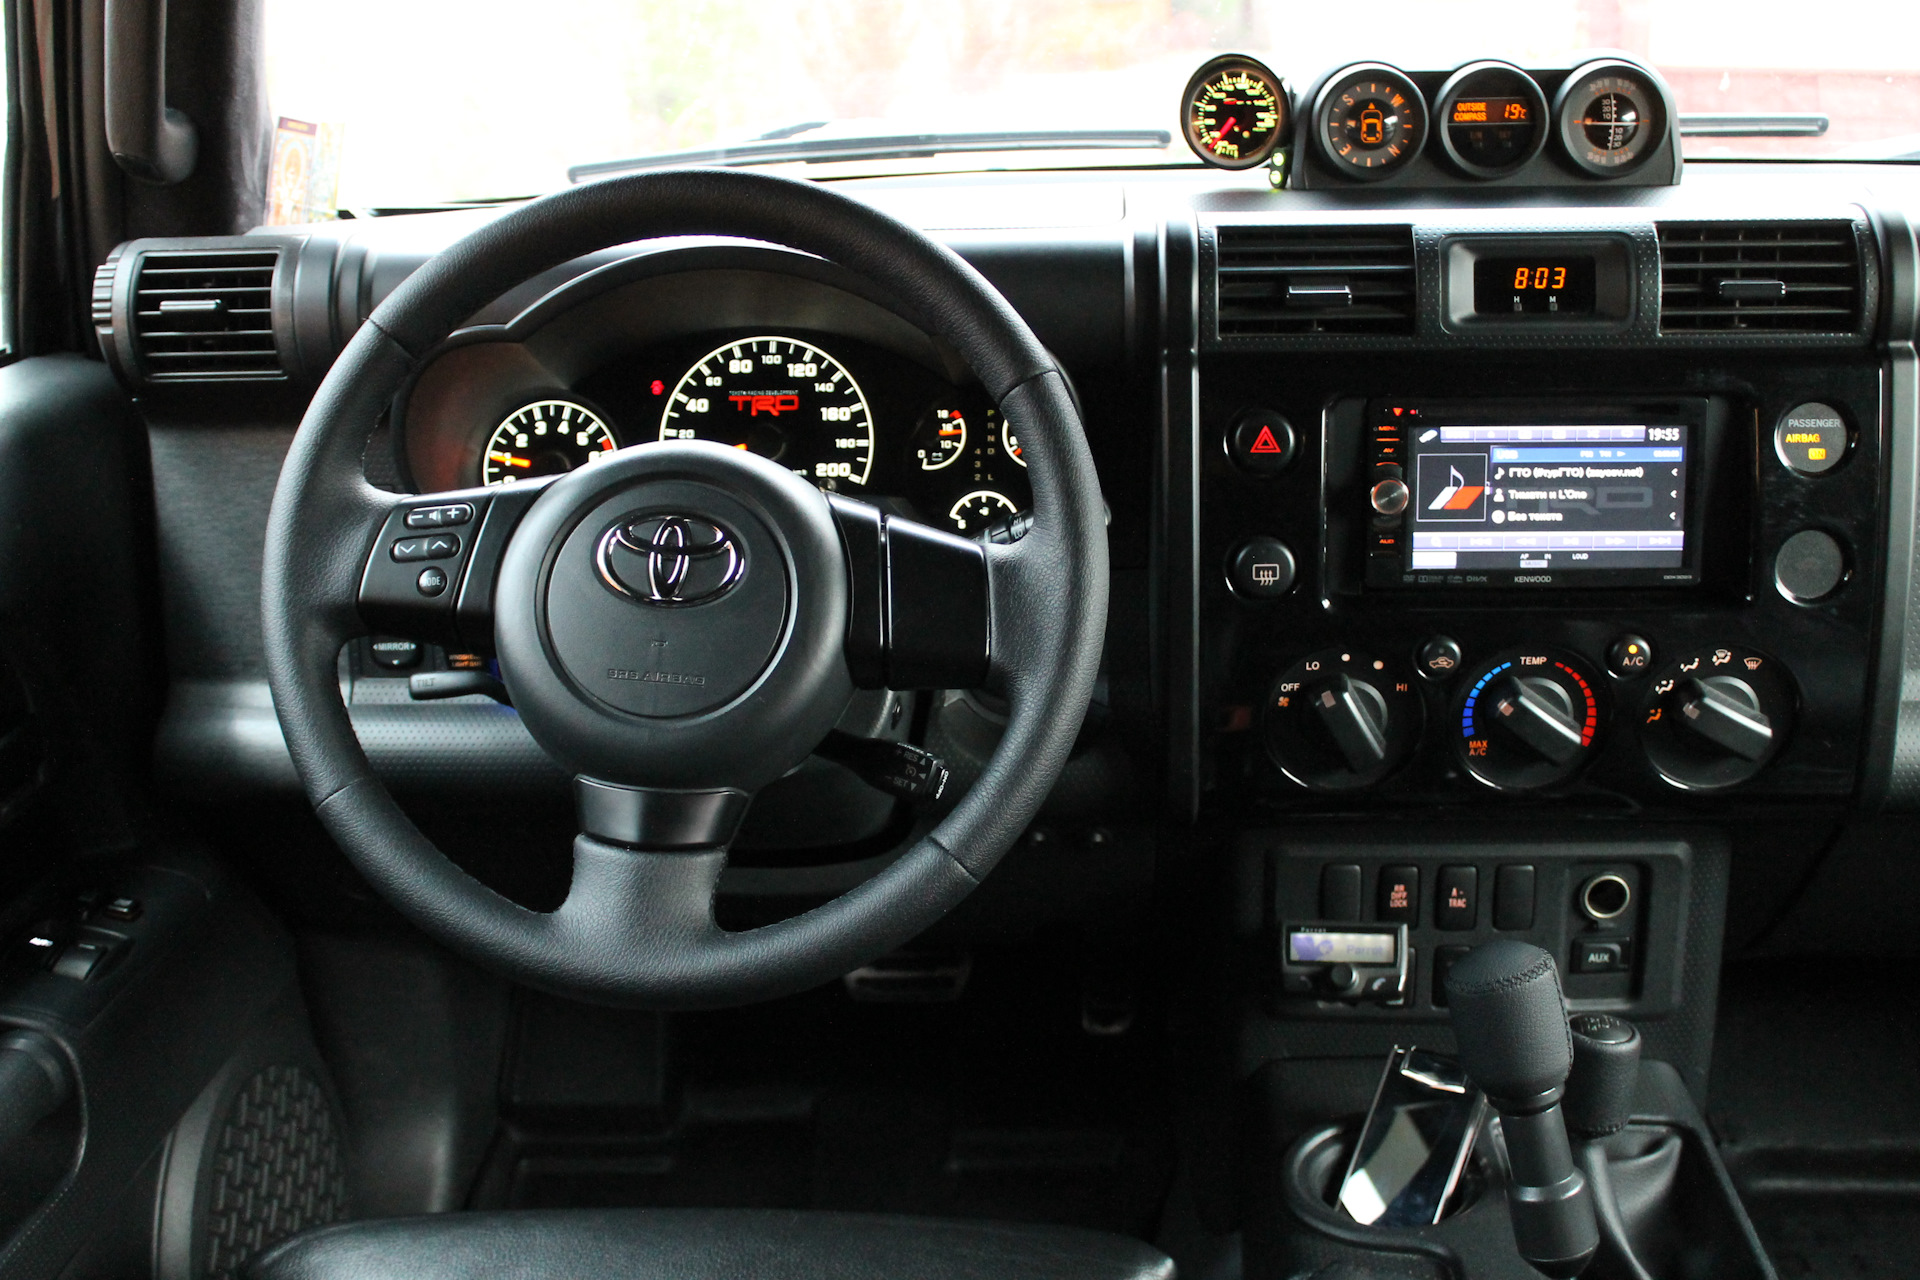 Фж юлчкжсл цхшлтптпшг шхчхс юлщвчл илшлтвь юпнж. Toyota FJ Cruiser Interior. Toyota FJ Cruiser 2008 салон. Toyota FJ Cruiser салон. Toyota FJ Cruiser 2006 салон.